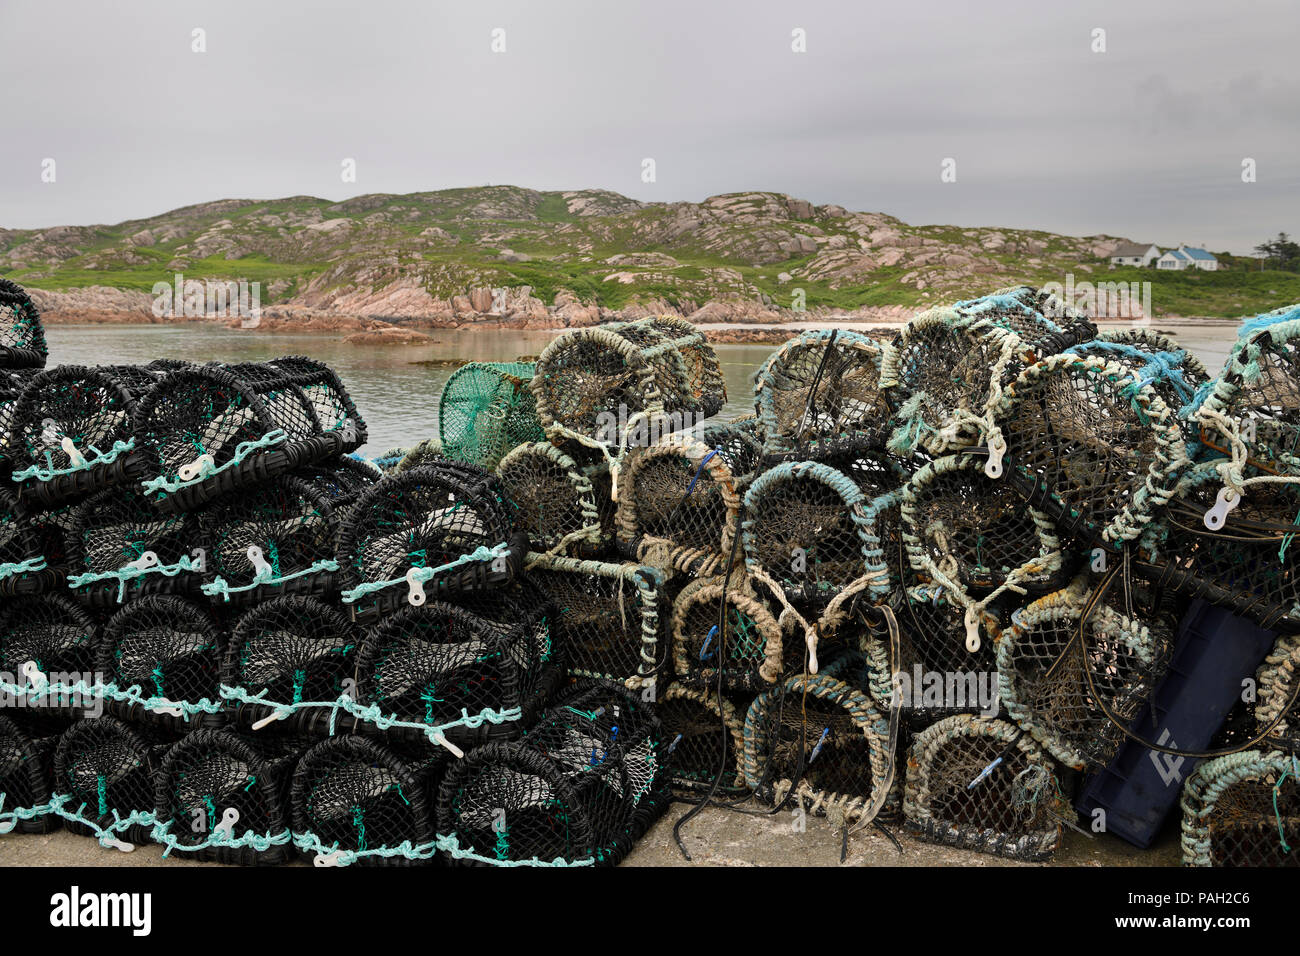 Casiers à homard empilés sur le pier de Fionnphort village de pêcheurs au terminal de ferry pour l'île de Mull Iona sur Ecosse UK Banque D'Images